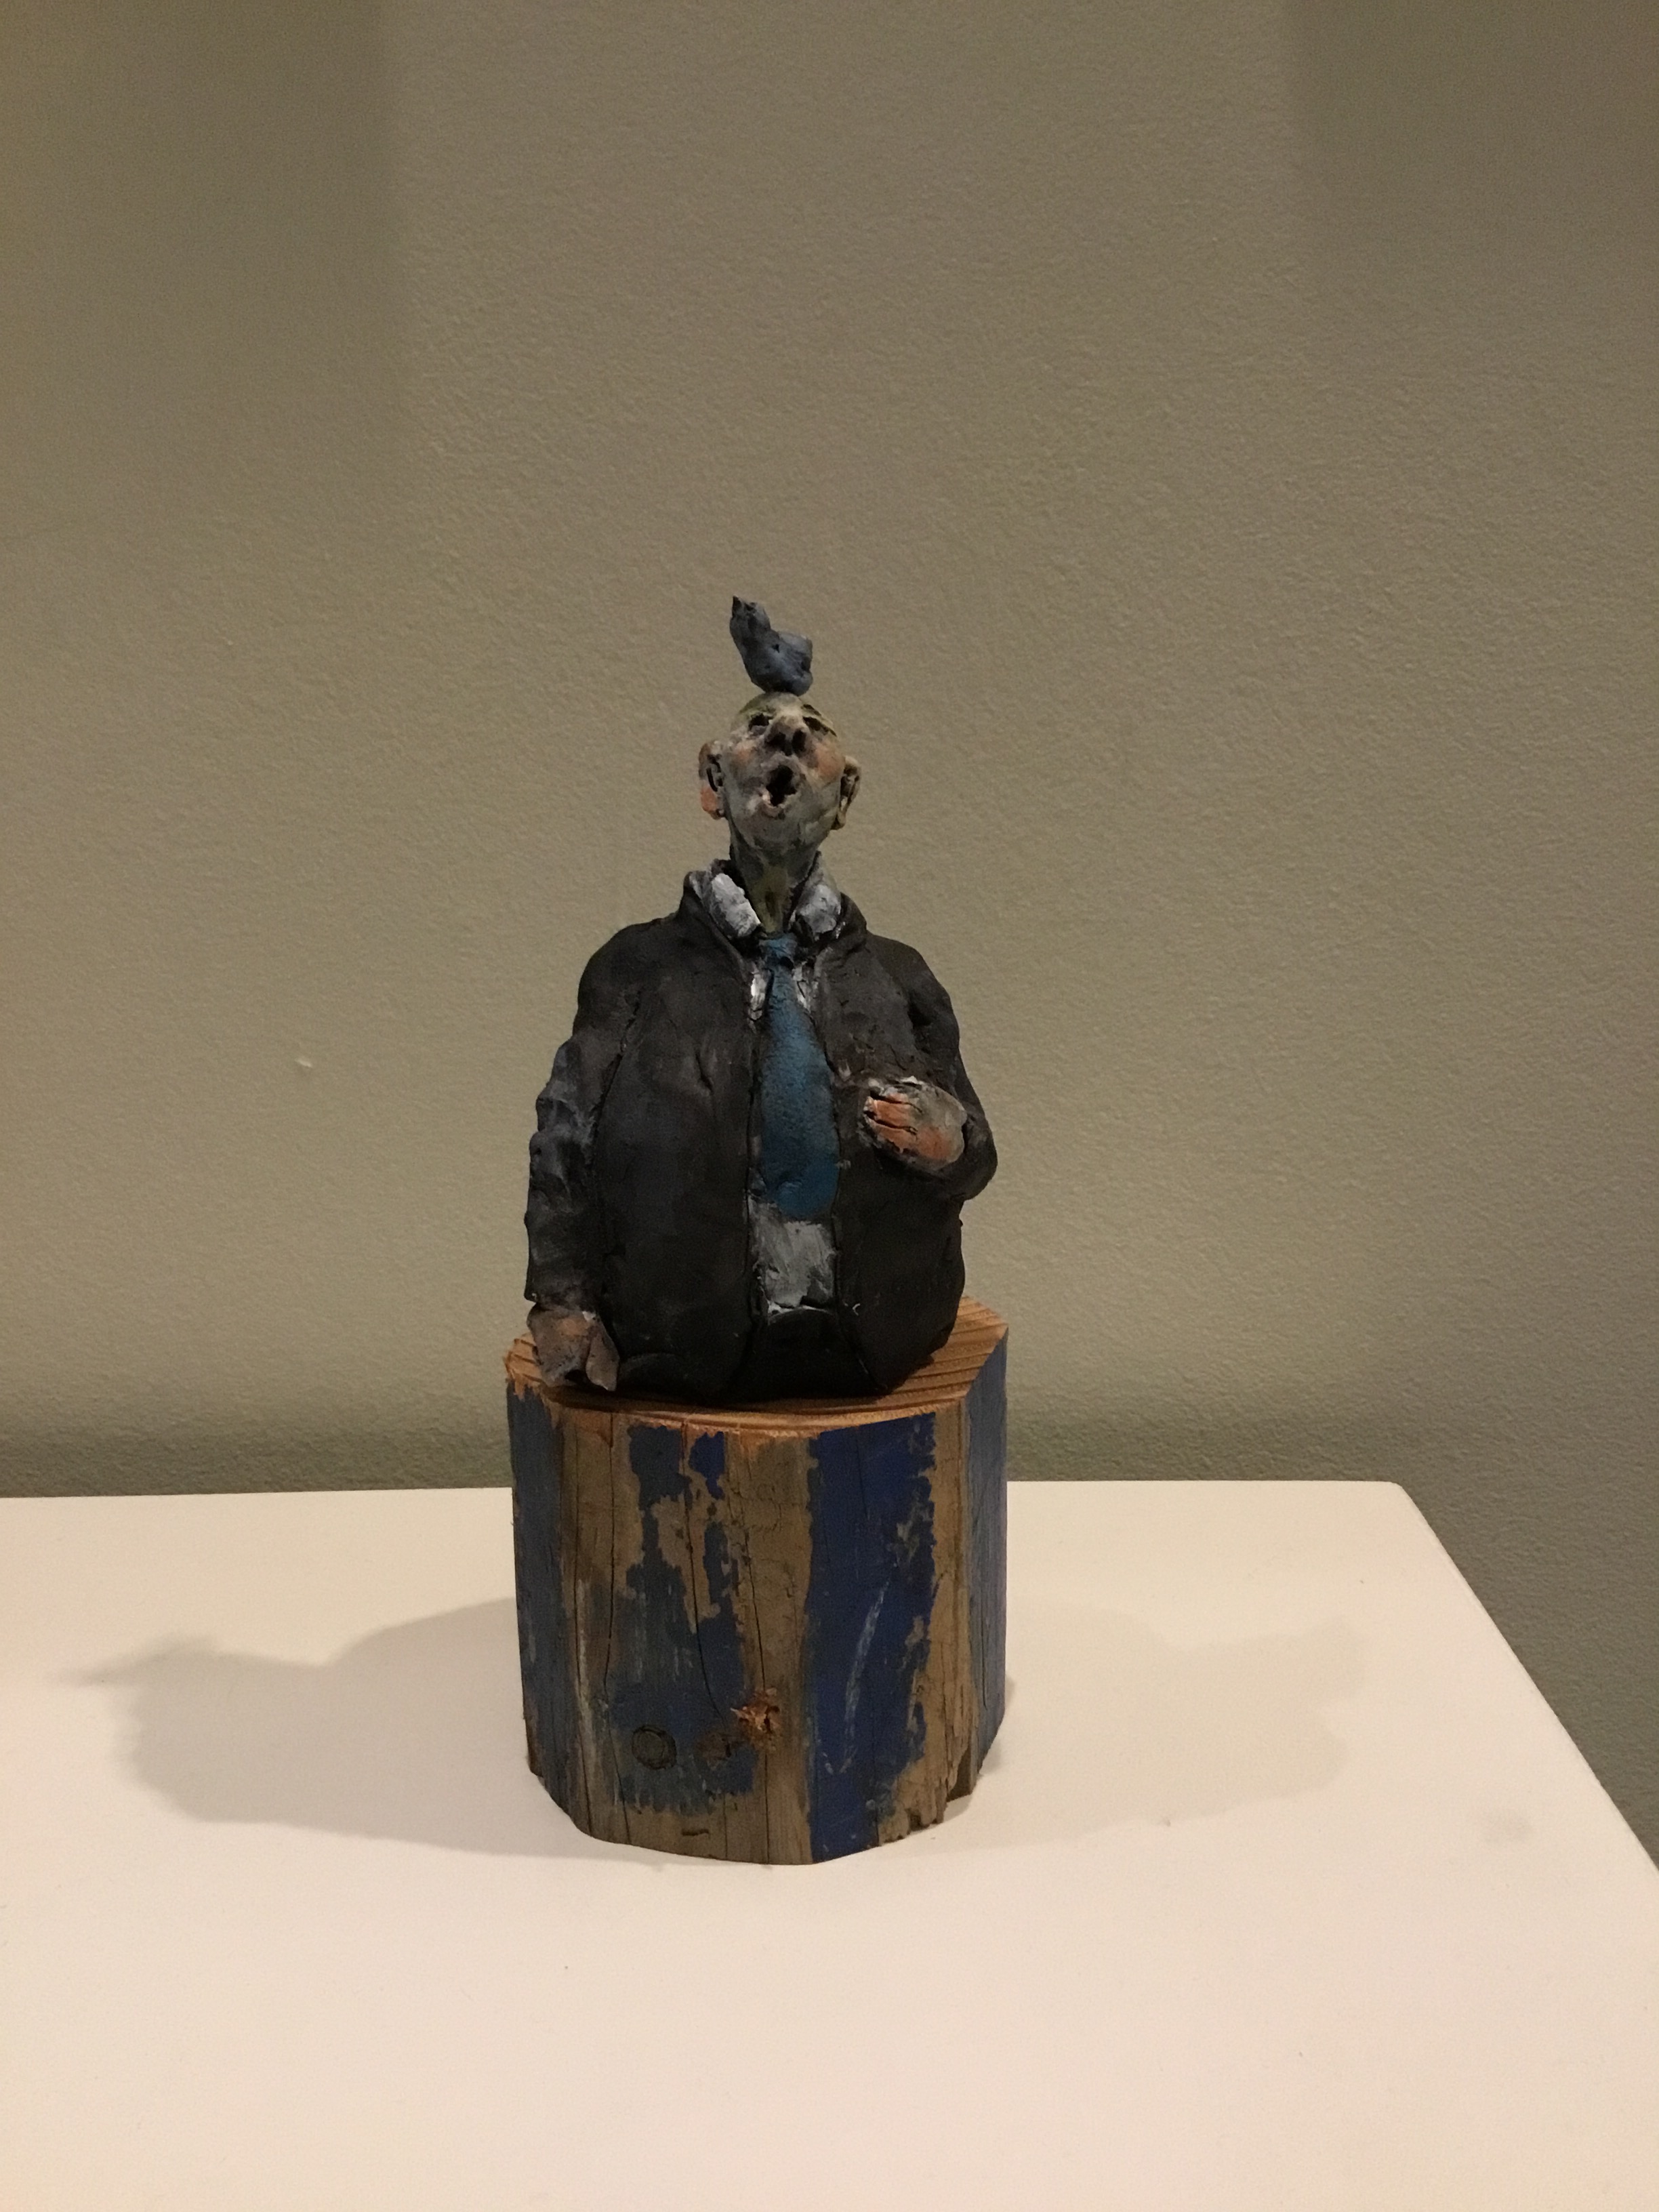 The Bird Singer
Ceramic
5"
$140.